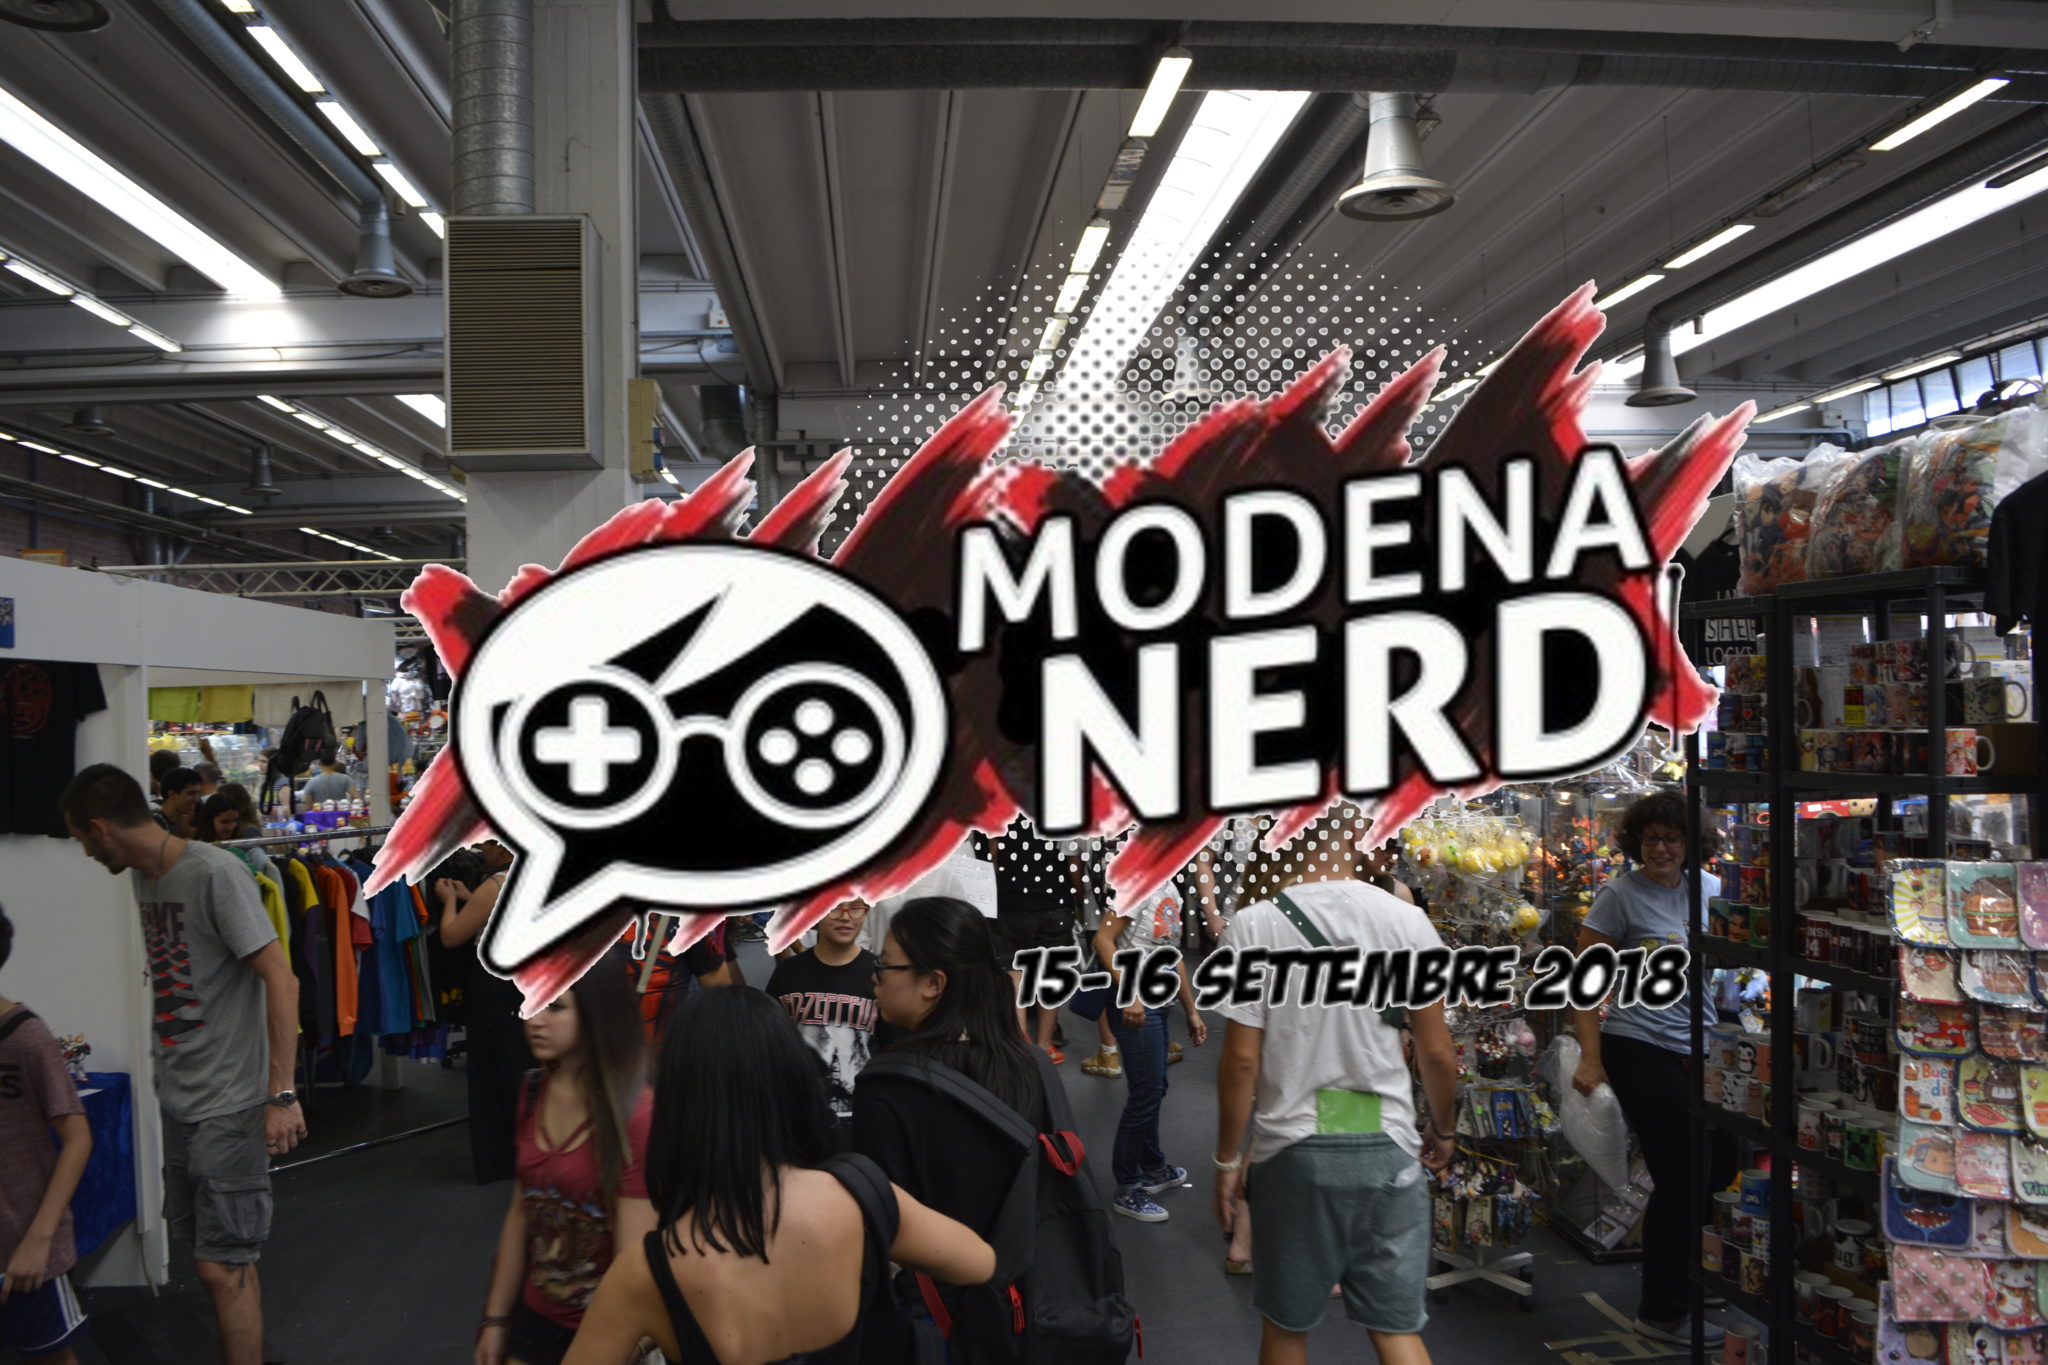 Modena nerd: la fiera “retrò” che guarda avanti